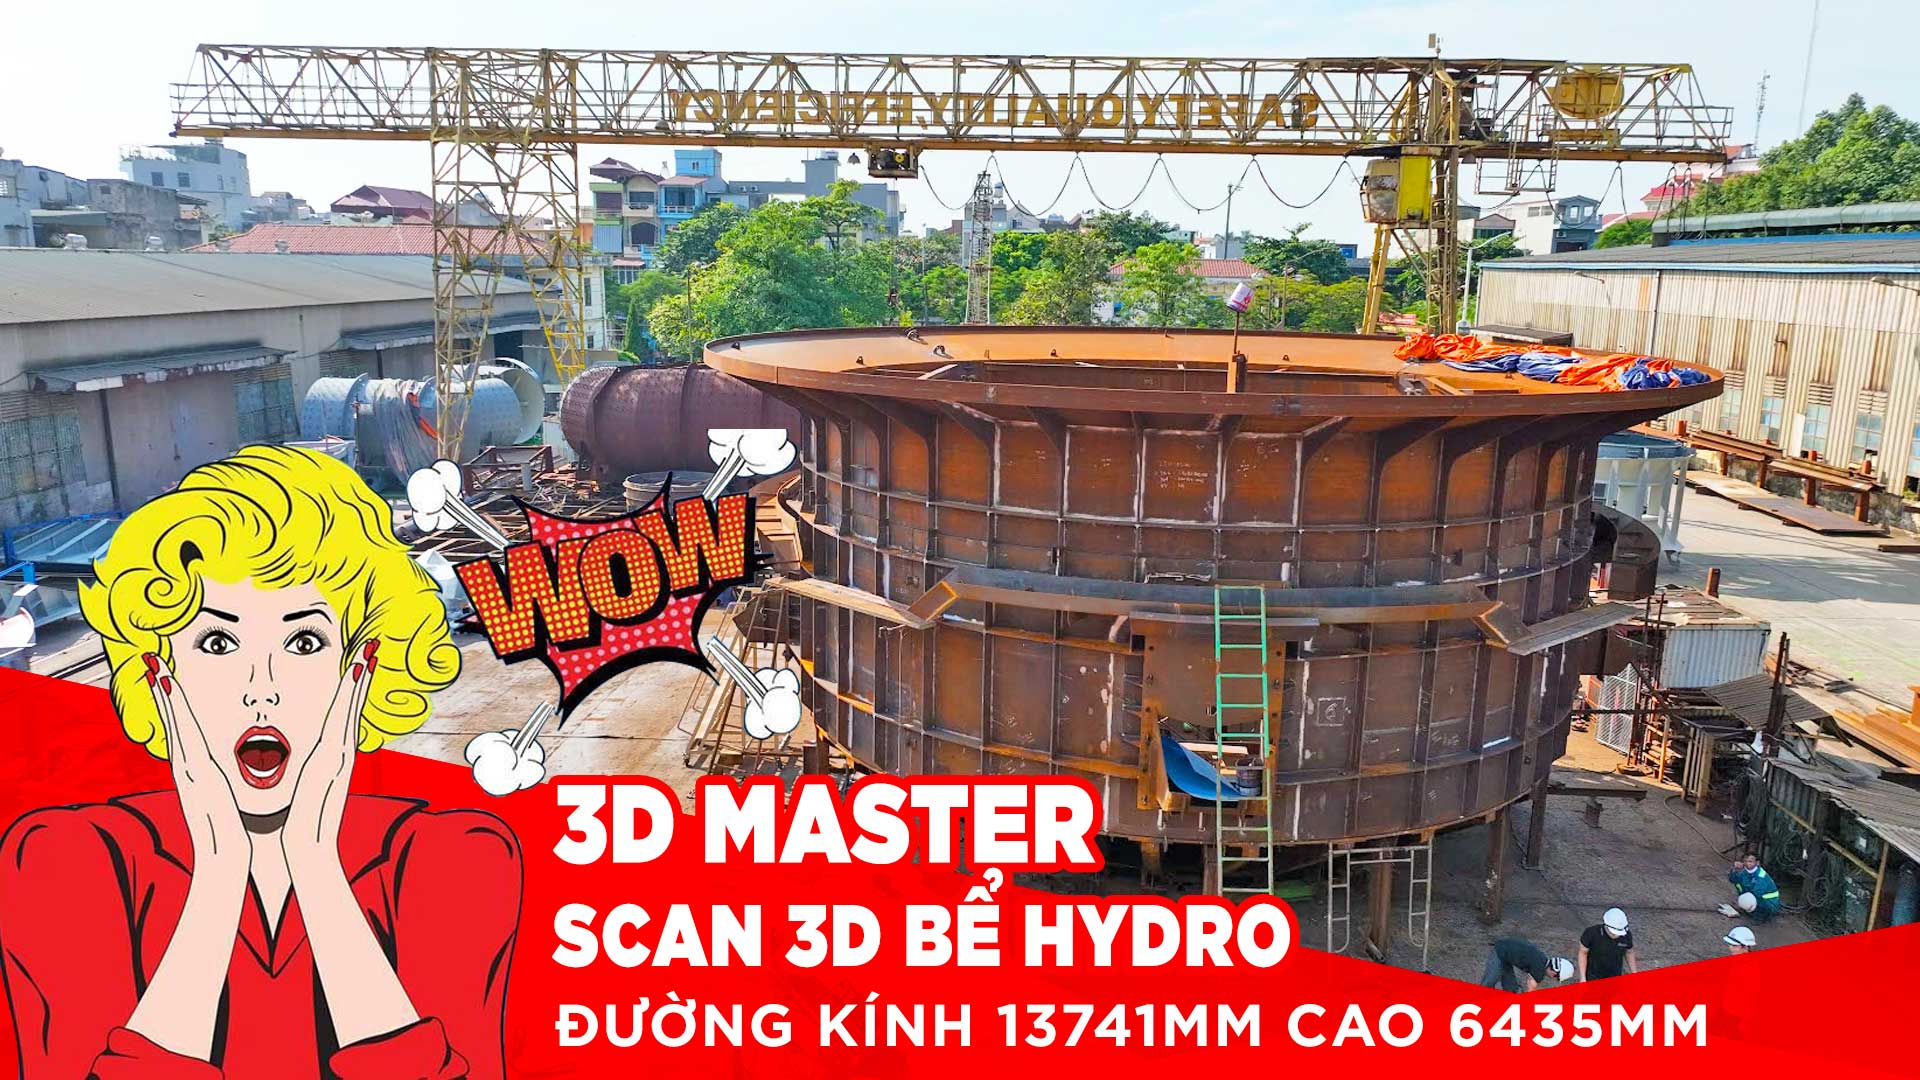 3D Master Scan 3D Bể Hydro đường kính 